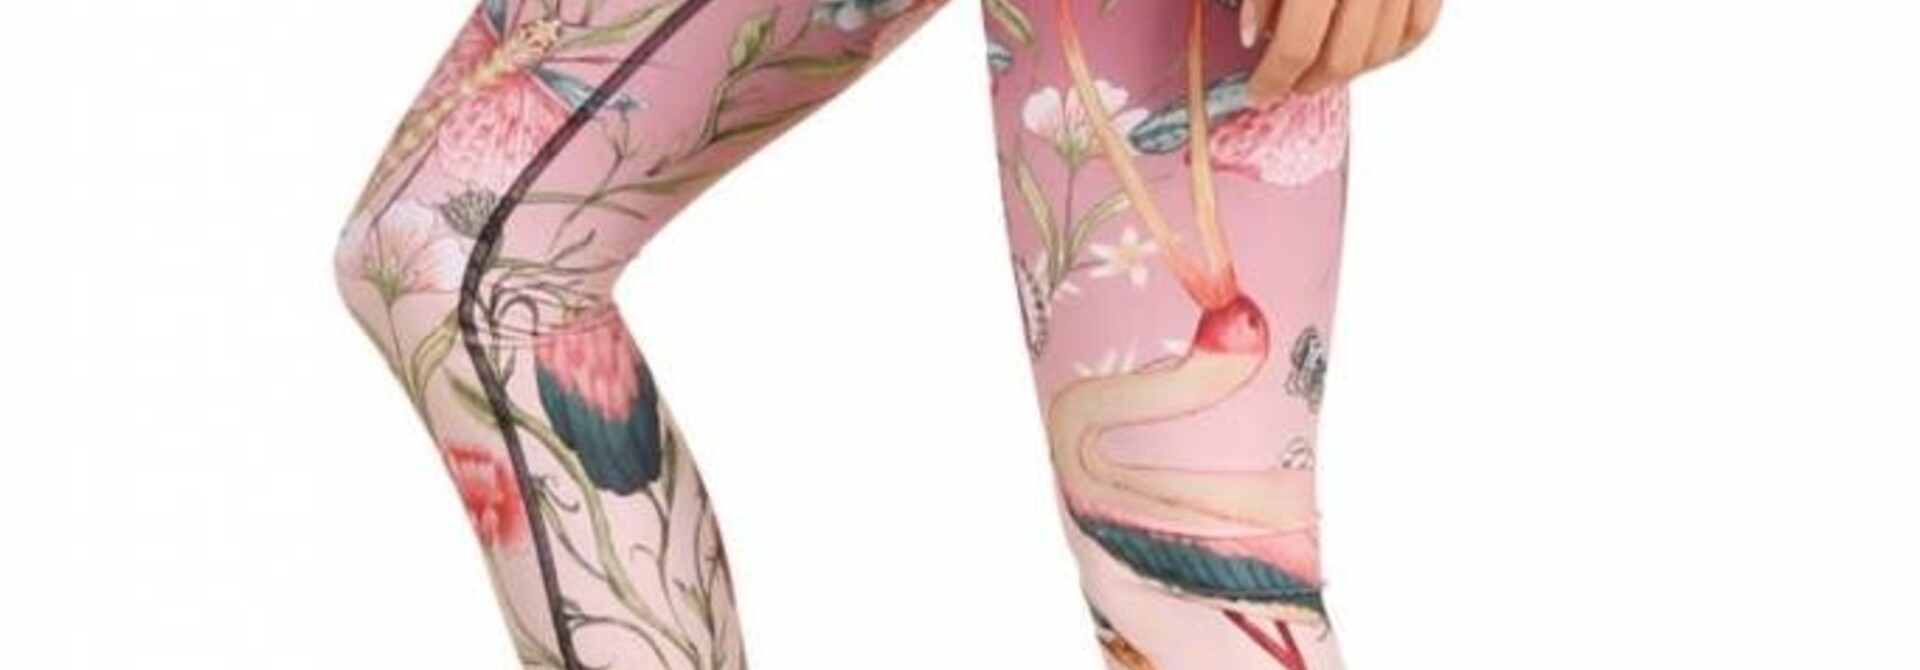 Yoga Democracy Yoga Legging - Pretty In Pink 81 cm Long